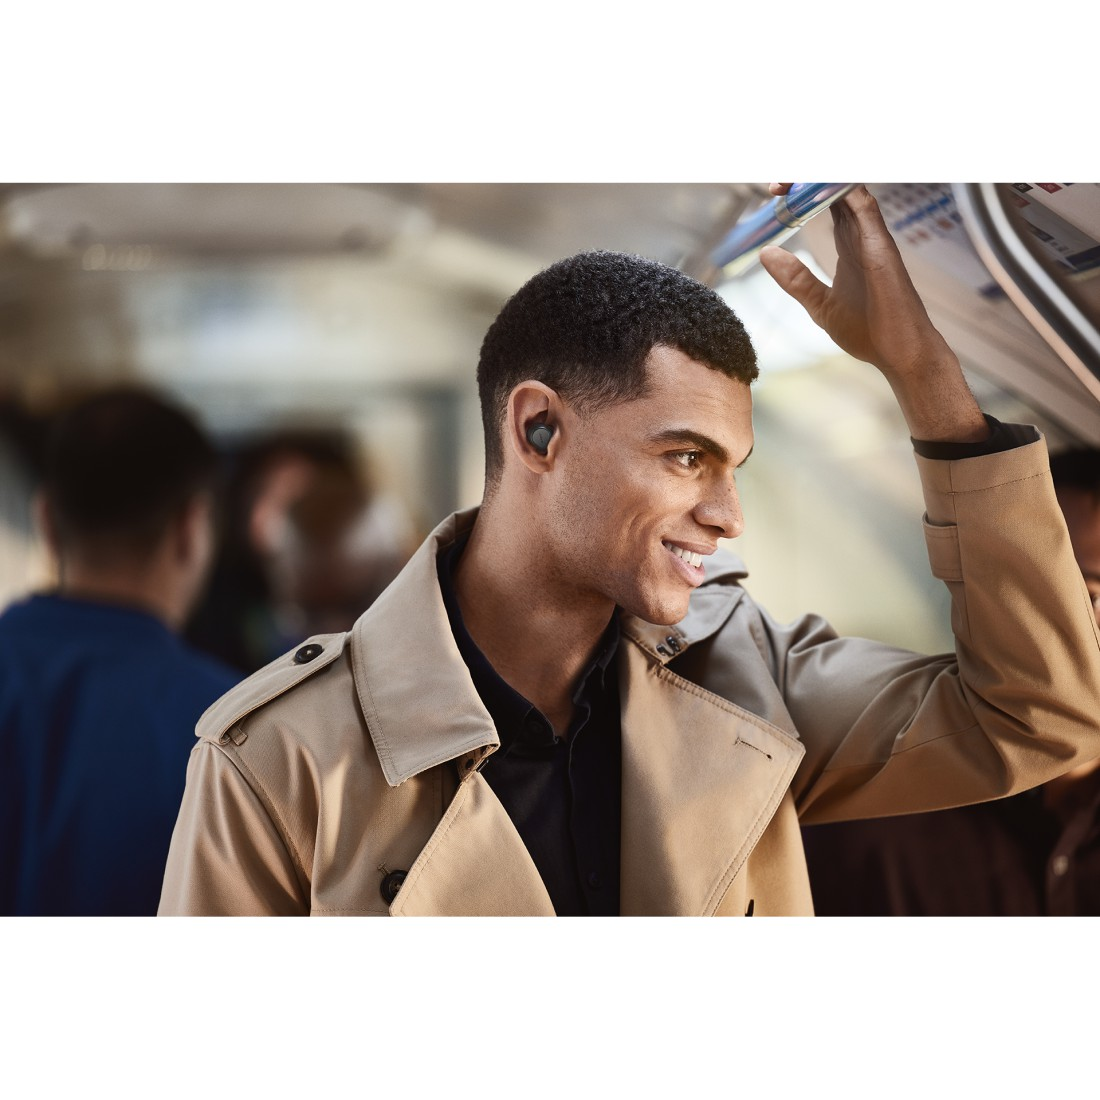 JABRA Elite Kopfhörer In-ear ANC, Titan/Schwarz Bluetooth anpassbarem mit Pack, WLC Pro 7